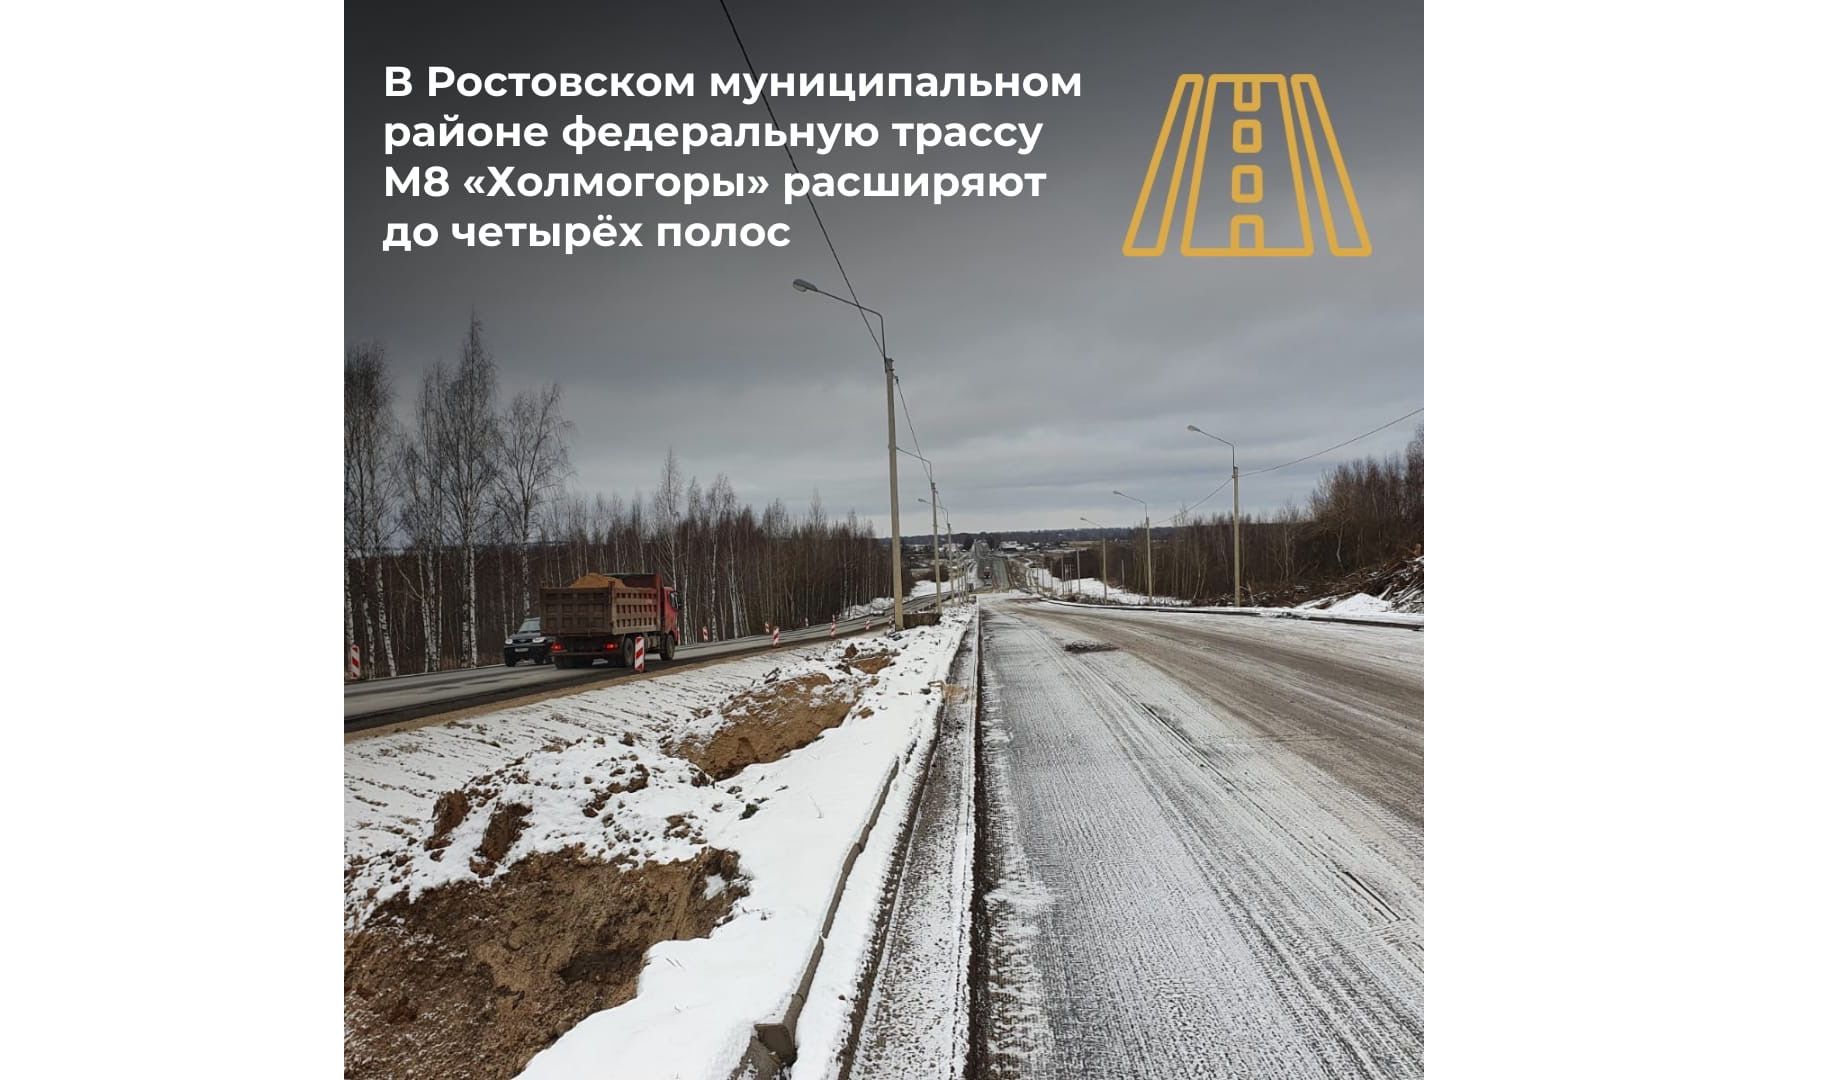 В Ярославской области расширяют участок федеральной трассы М8